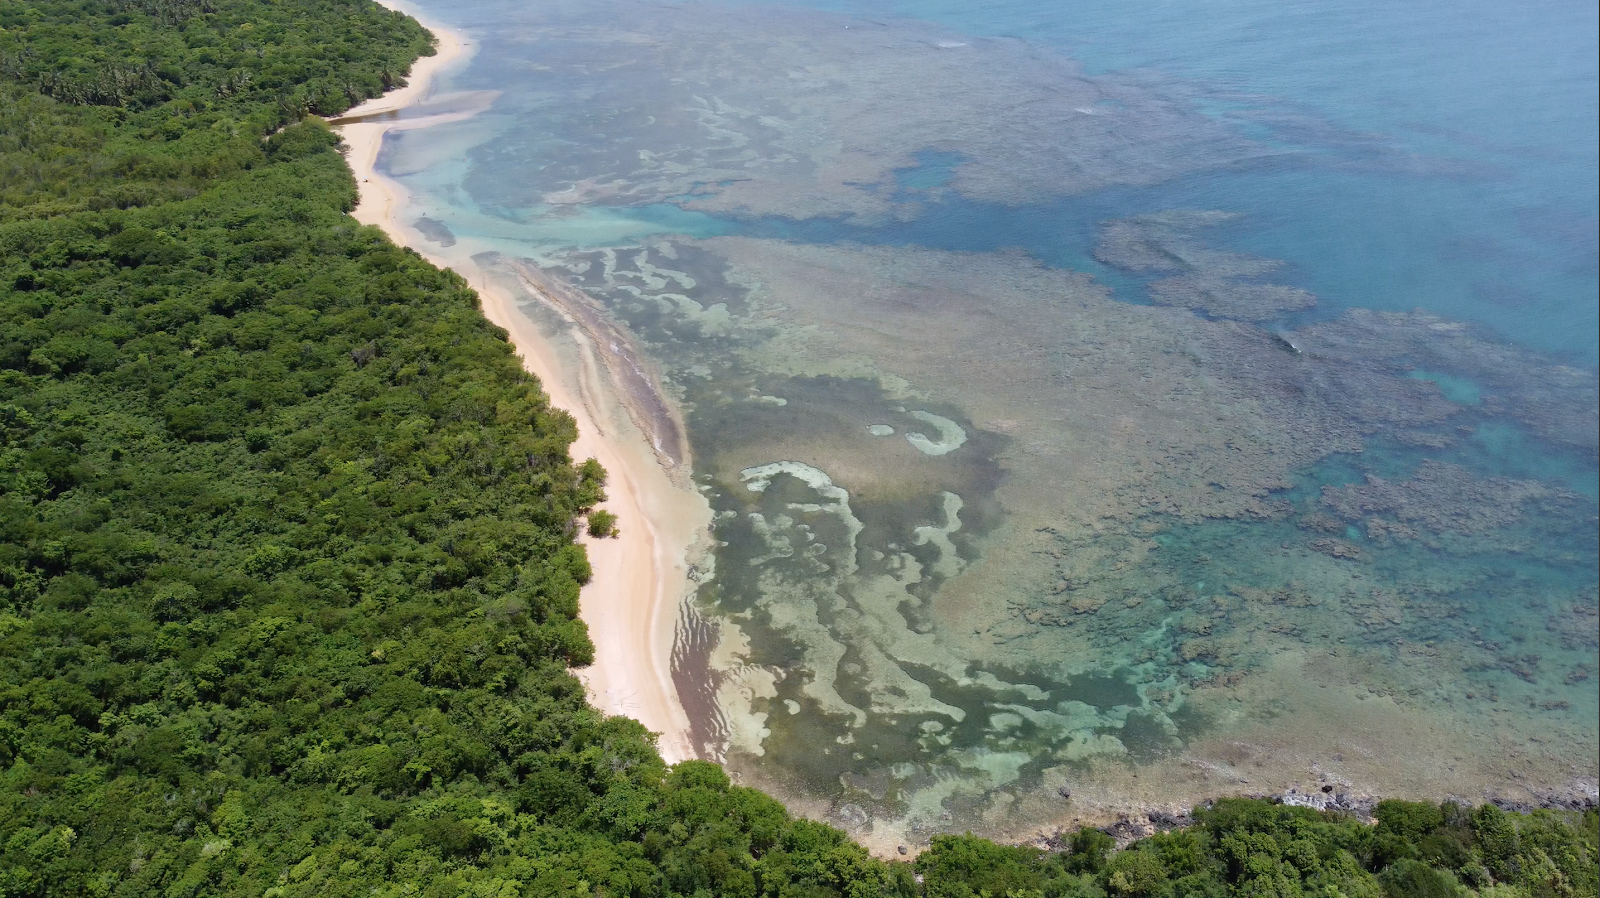 Zdjęcie Playa Escondida położony w naturalnym obszarze